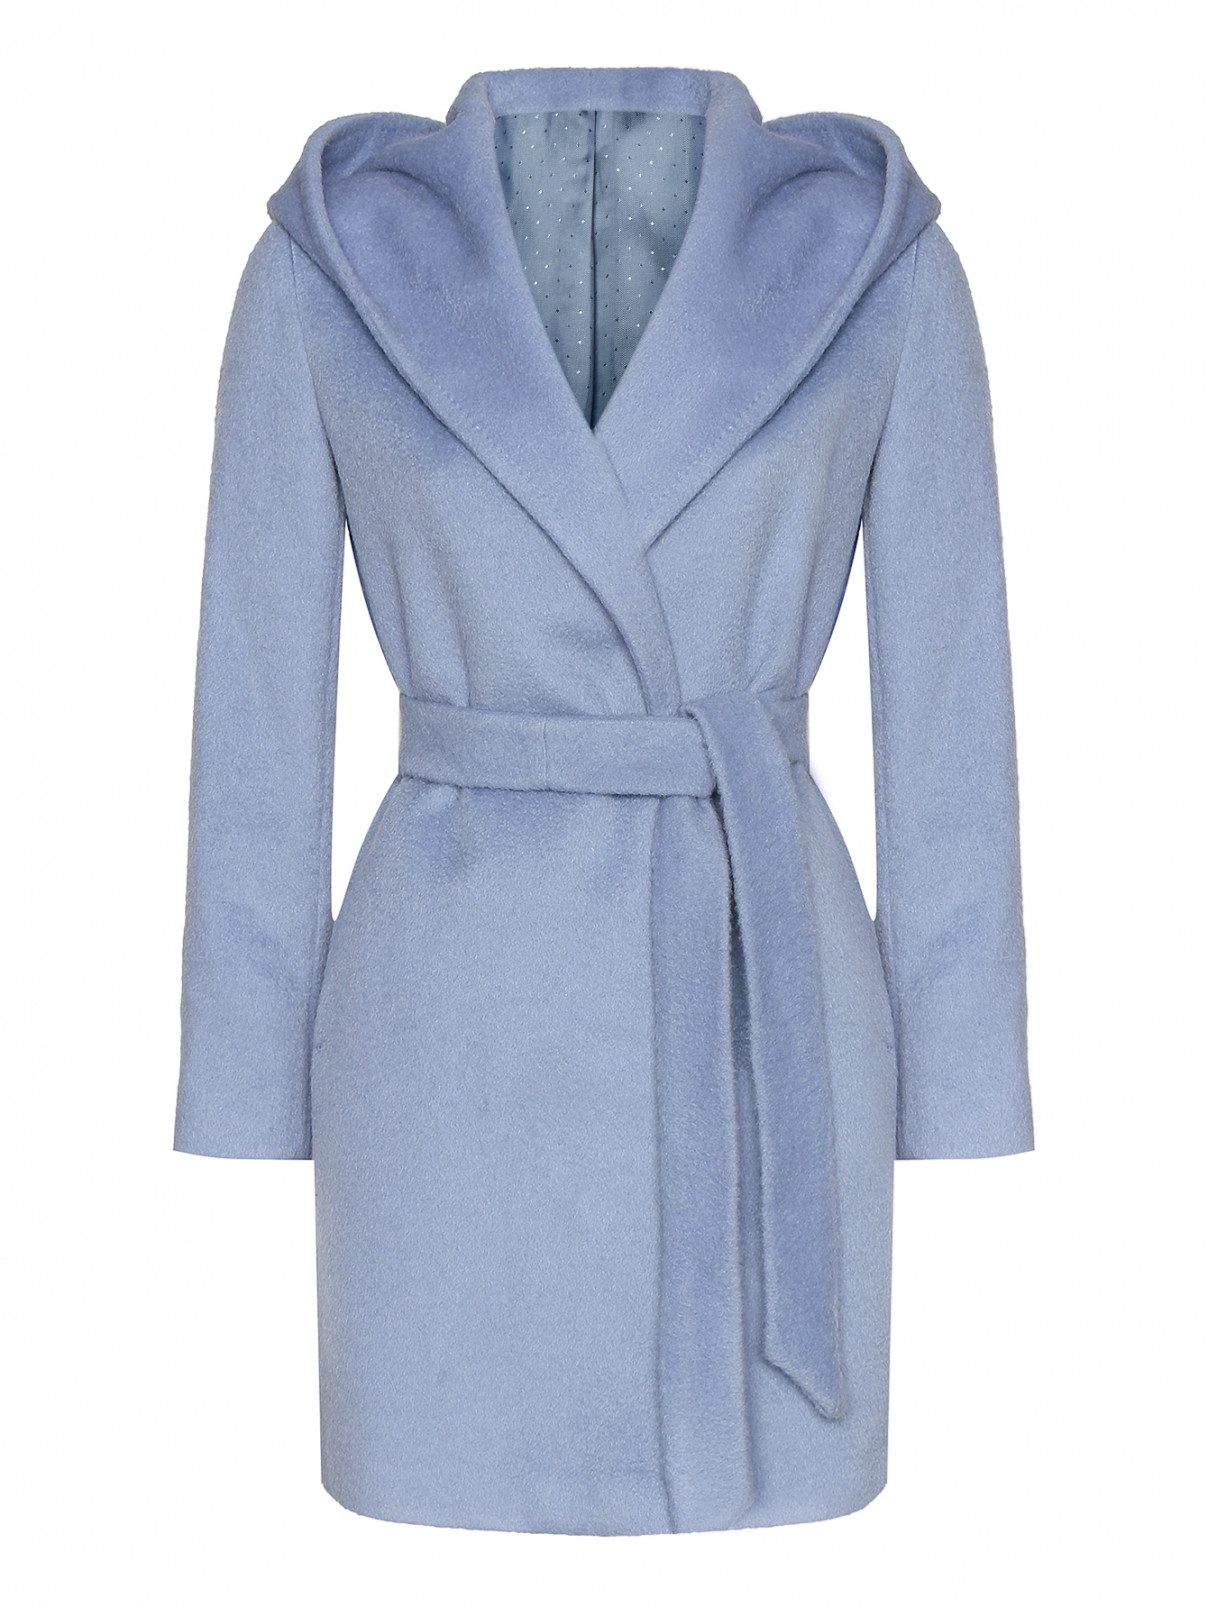 Пальто с капюшоном PennyBlack  –  Общий вид  – Цвет:  Синий